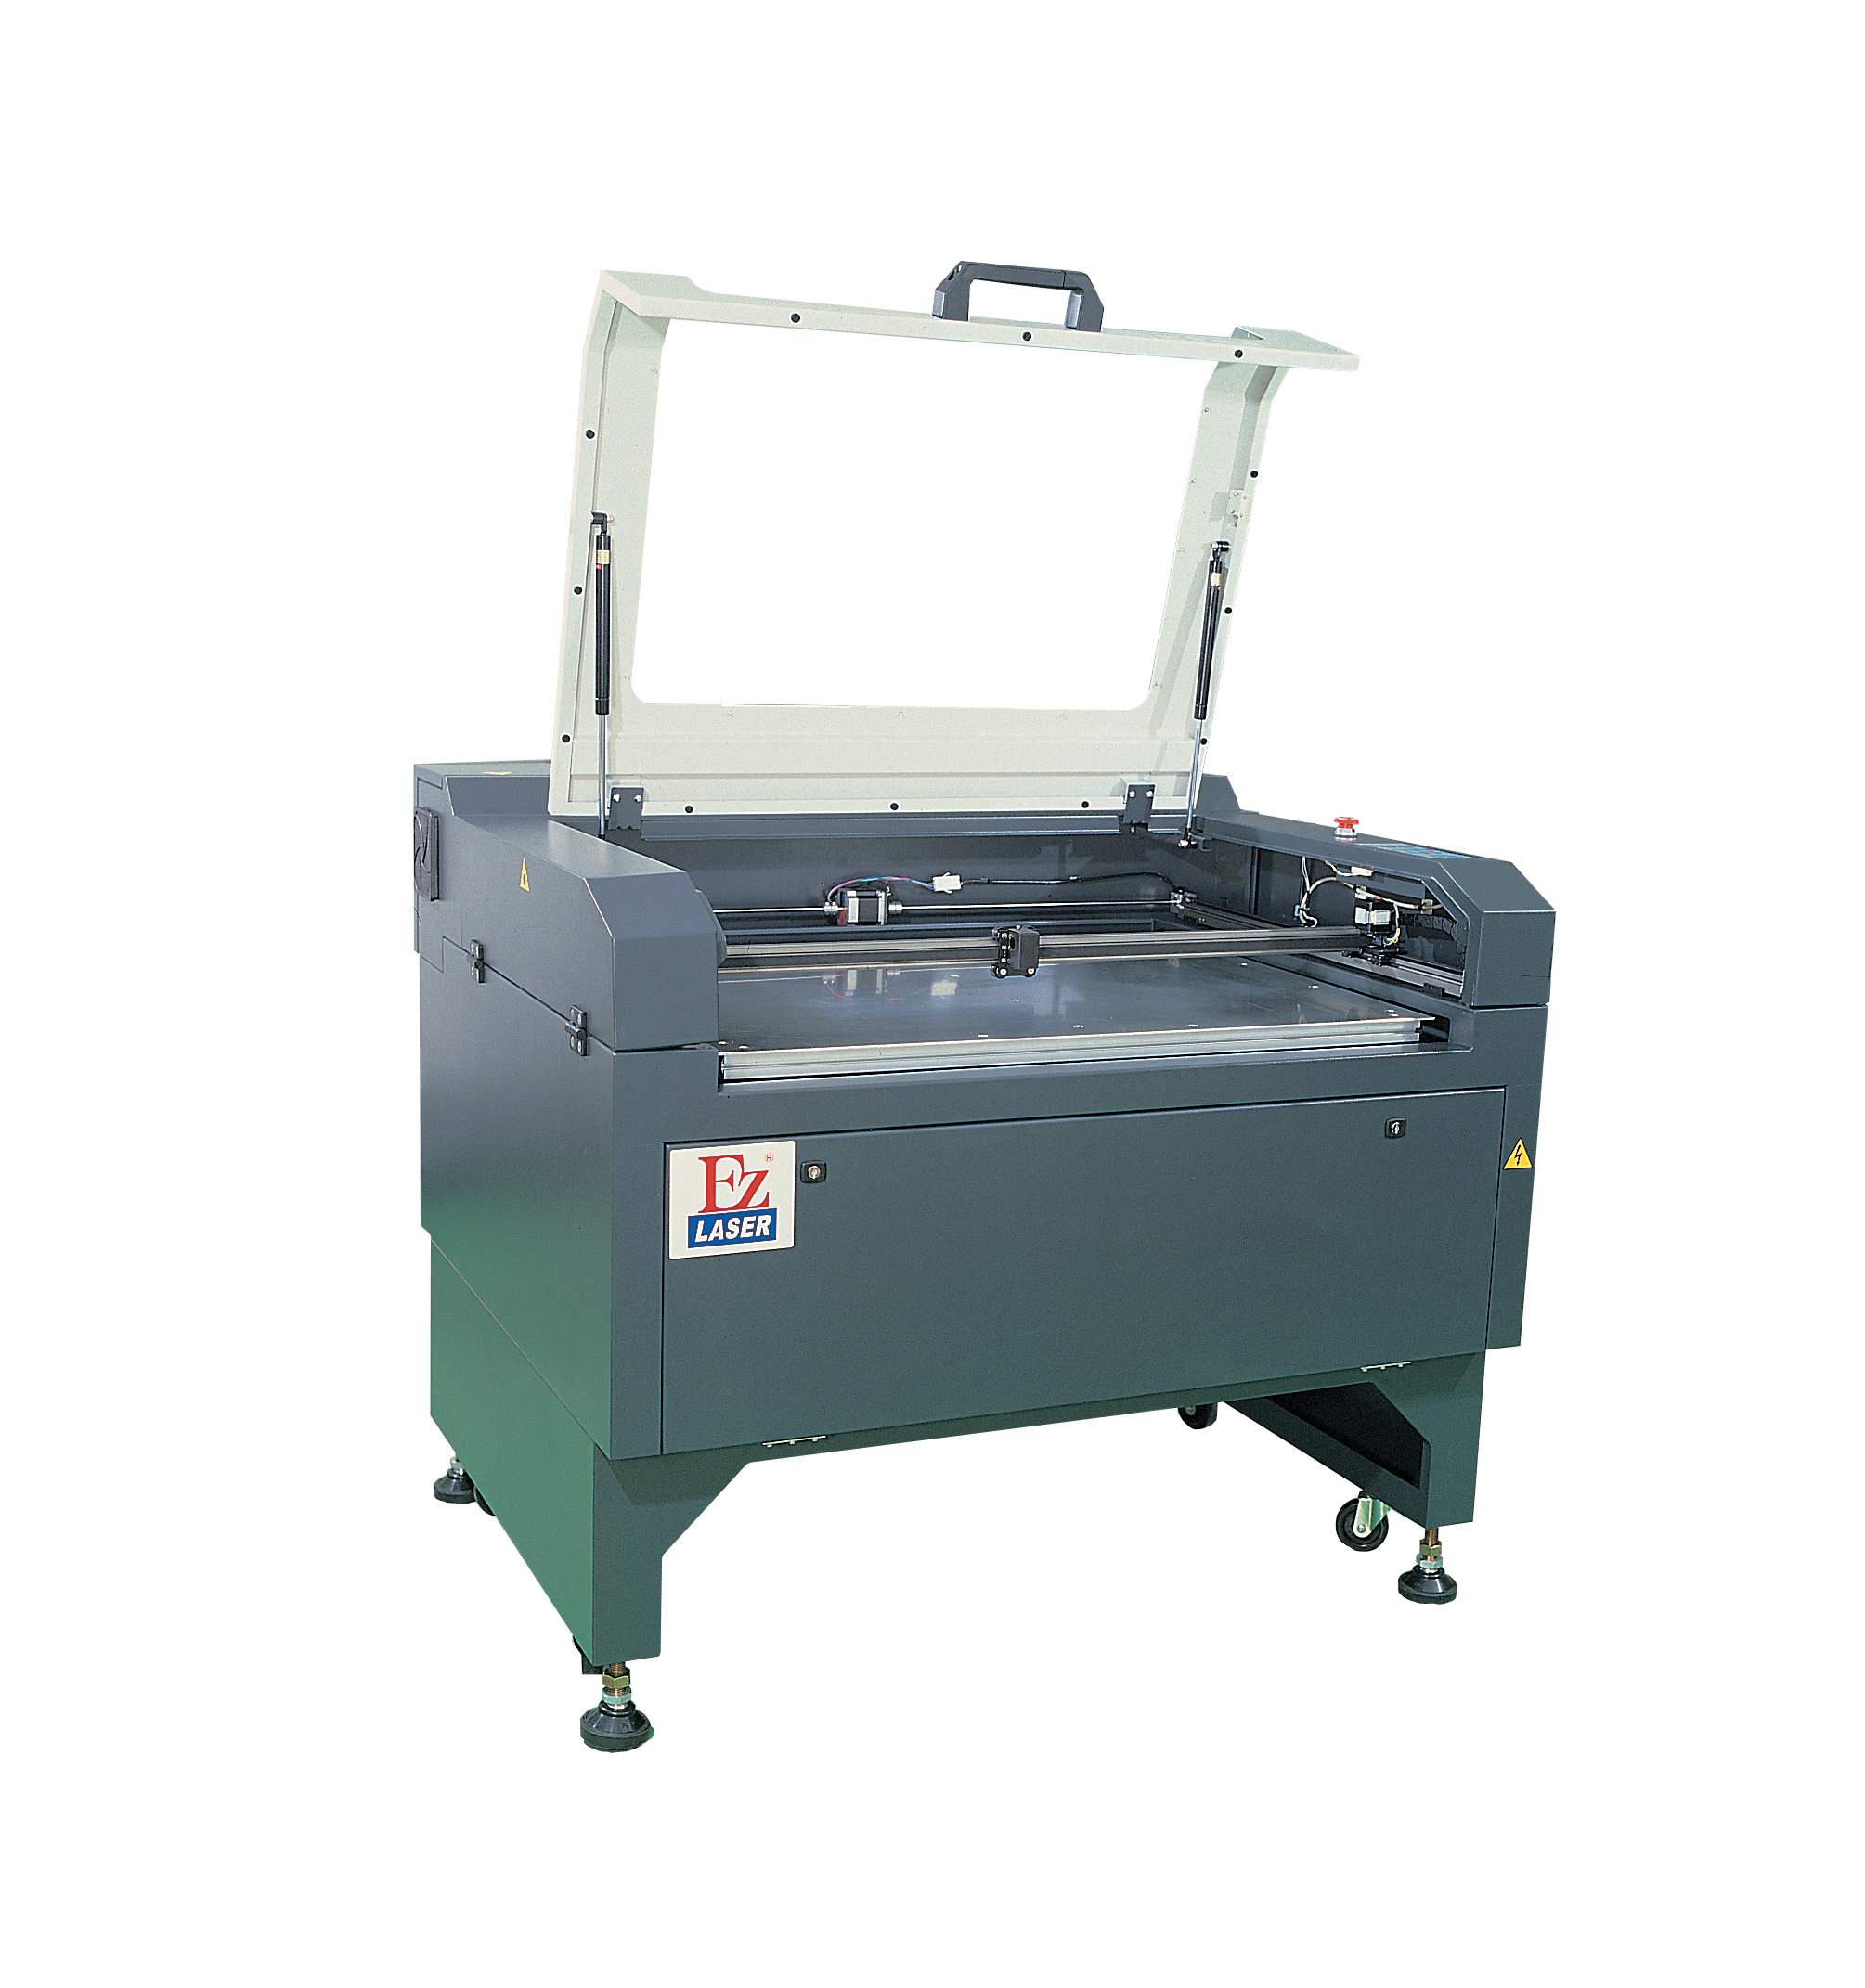 Laser Engraving Machine, Laser Engraver, Laser Engraving System (Laser-Gravur, Laser Gravur, Laser-Gravur-System)